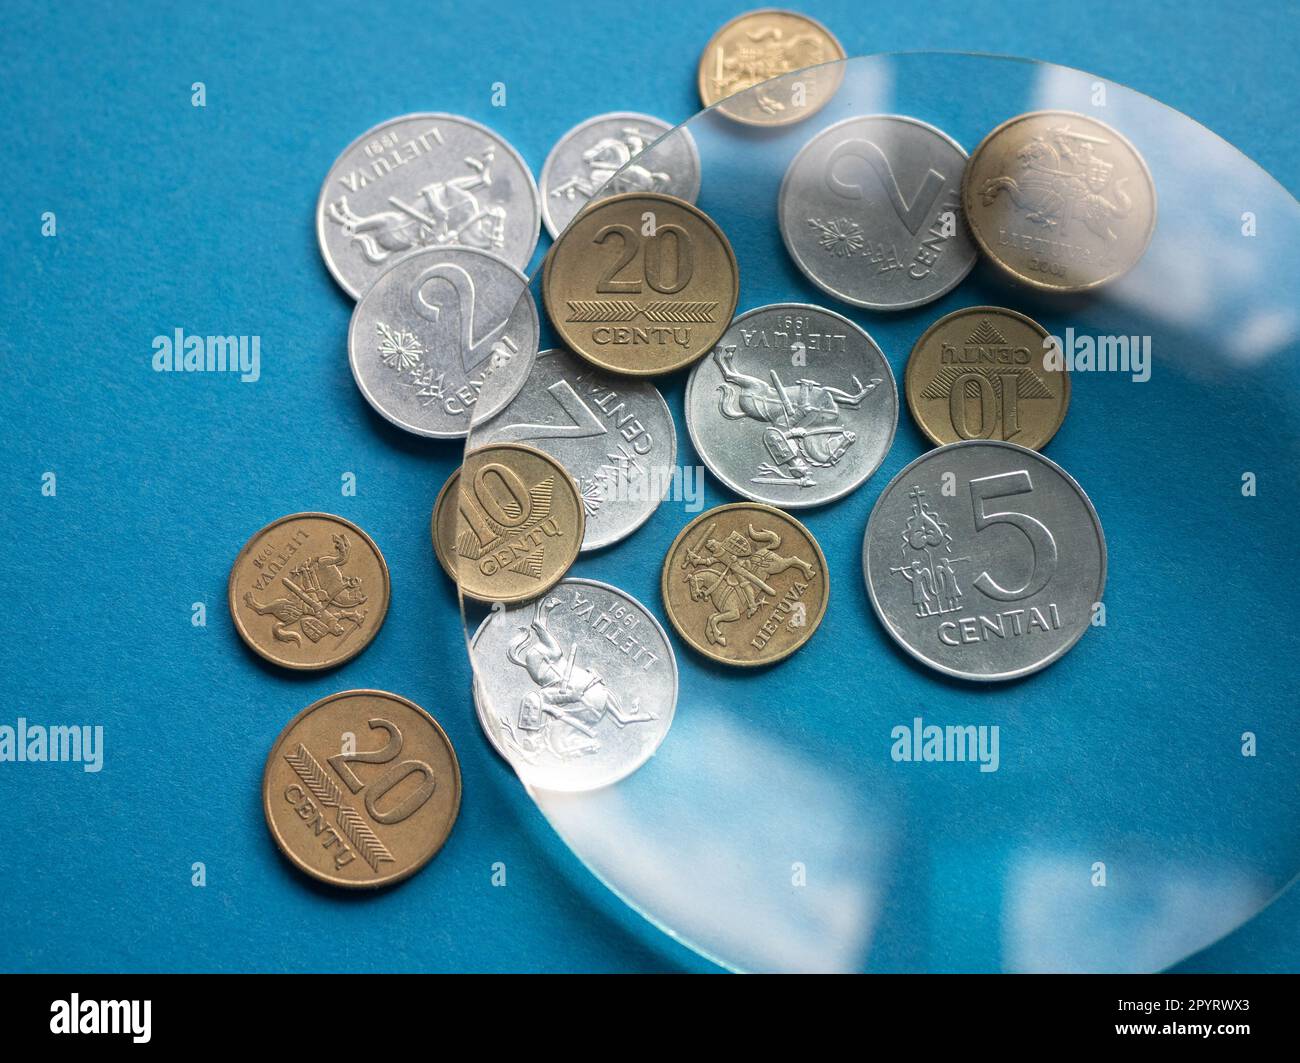 Vieux argent métallique lituanien sous loupe sur fond bleu, gros plan. Concept de devises locales Banque D'Images